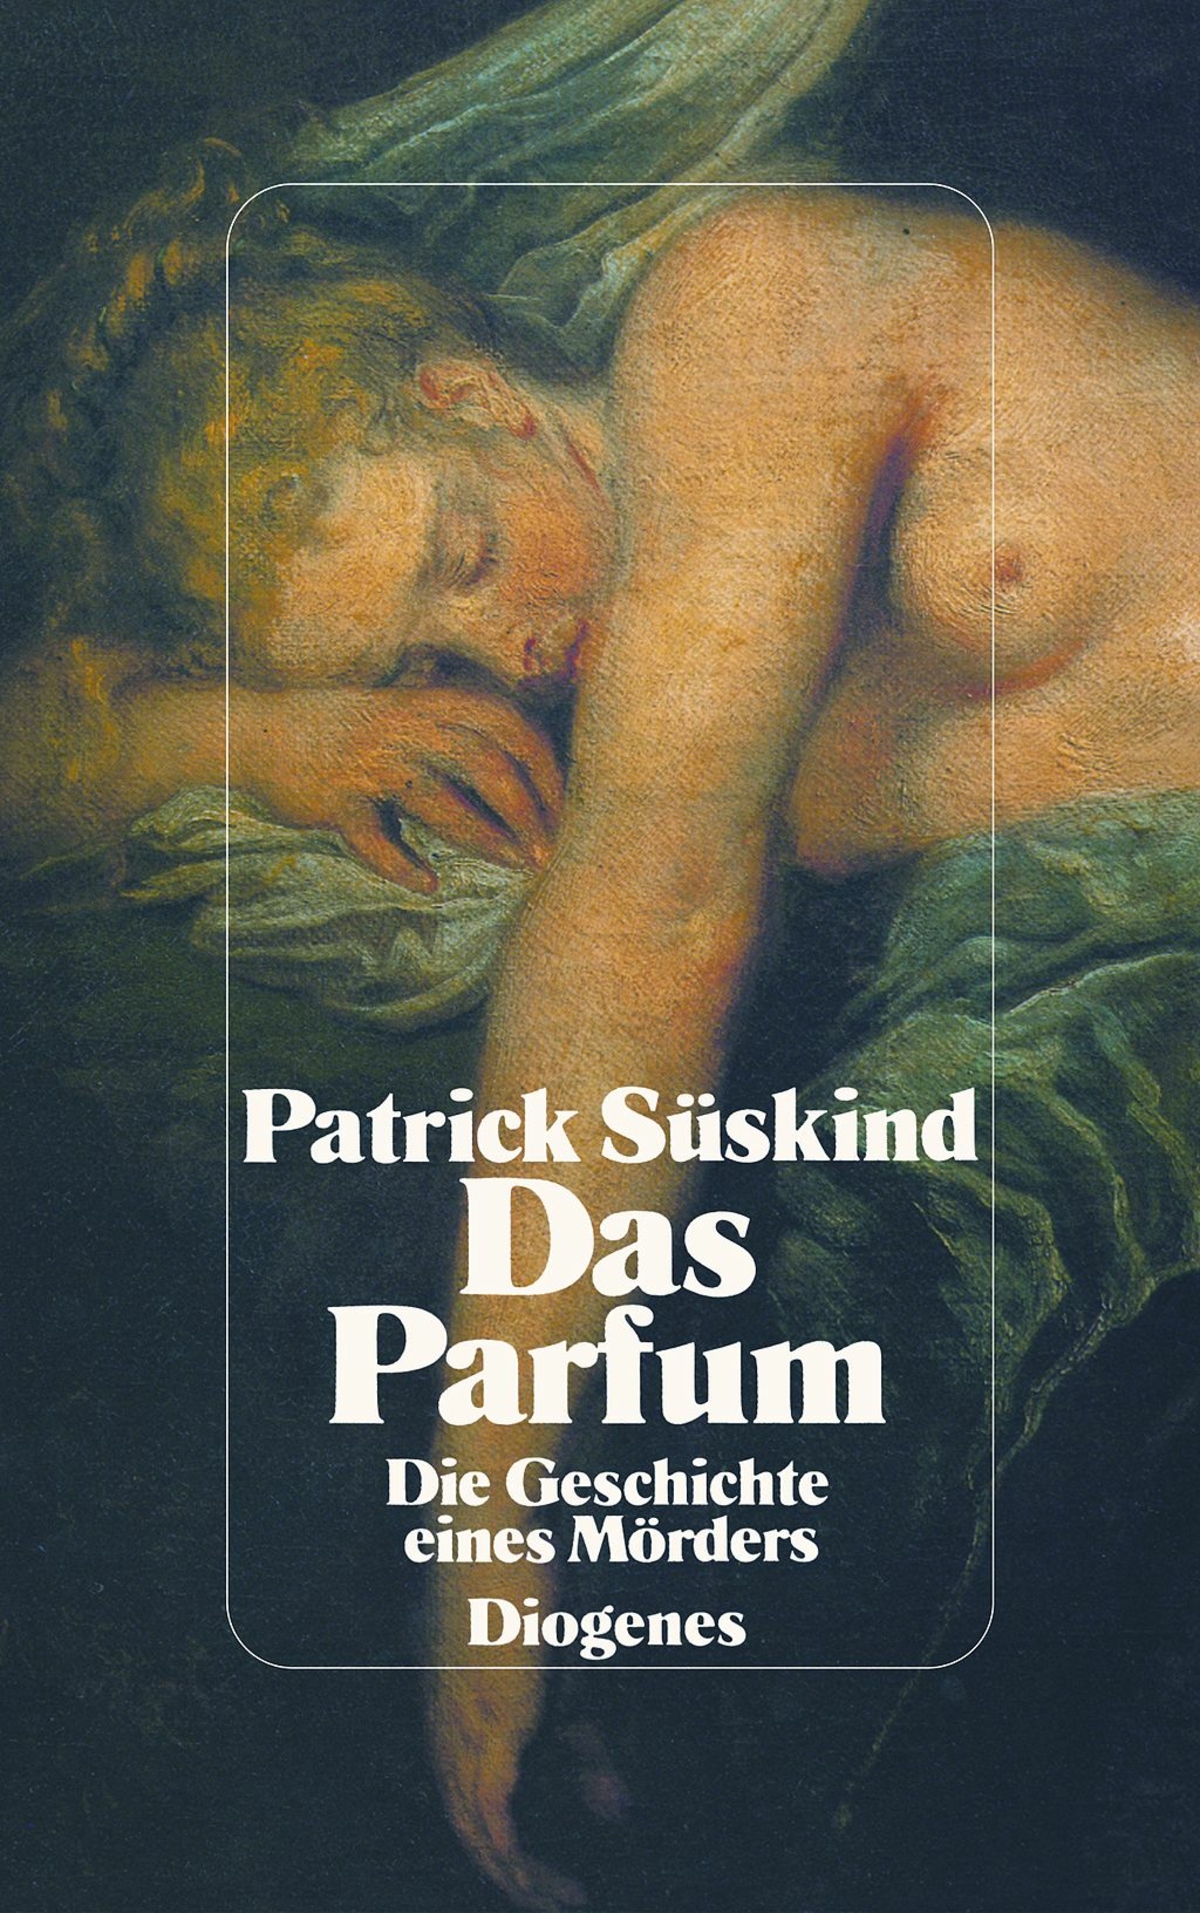 Der berühmte Roman des deutschen Schriftstellers Patrick Süskind wurde im Jahr 1985 veröffentlicht